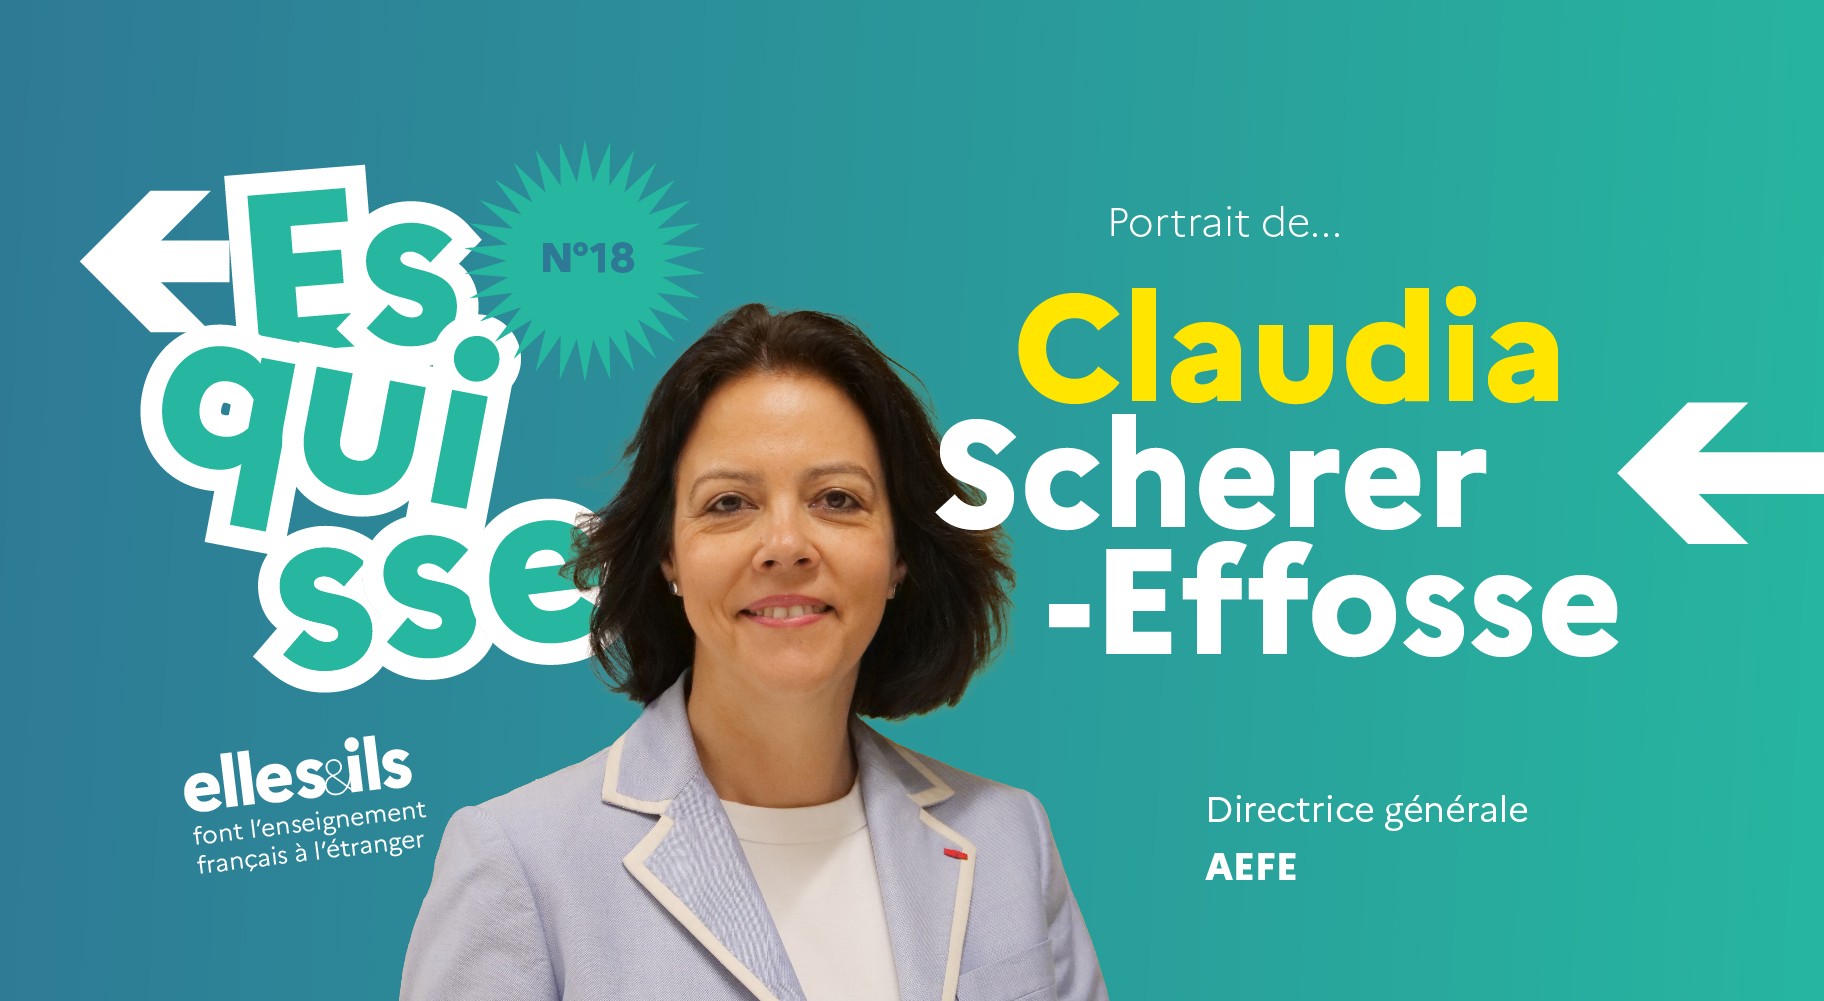 Portrait de Claudia Scherer-Effosse, directrice générale de l'AEFE